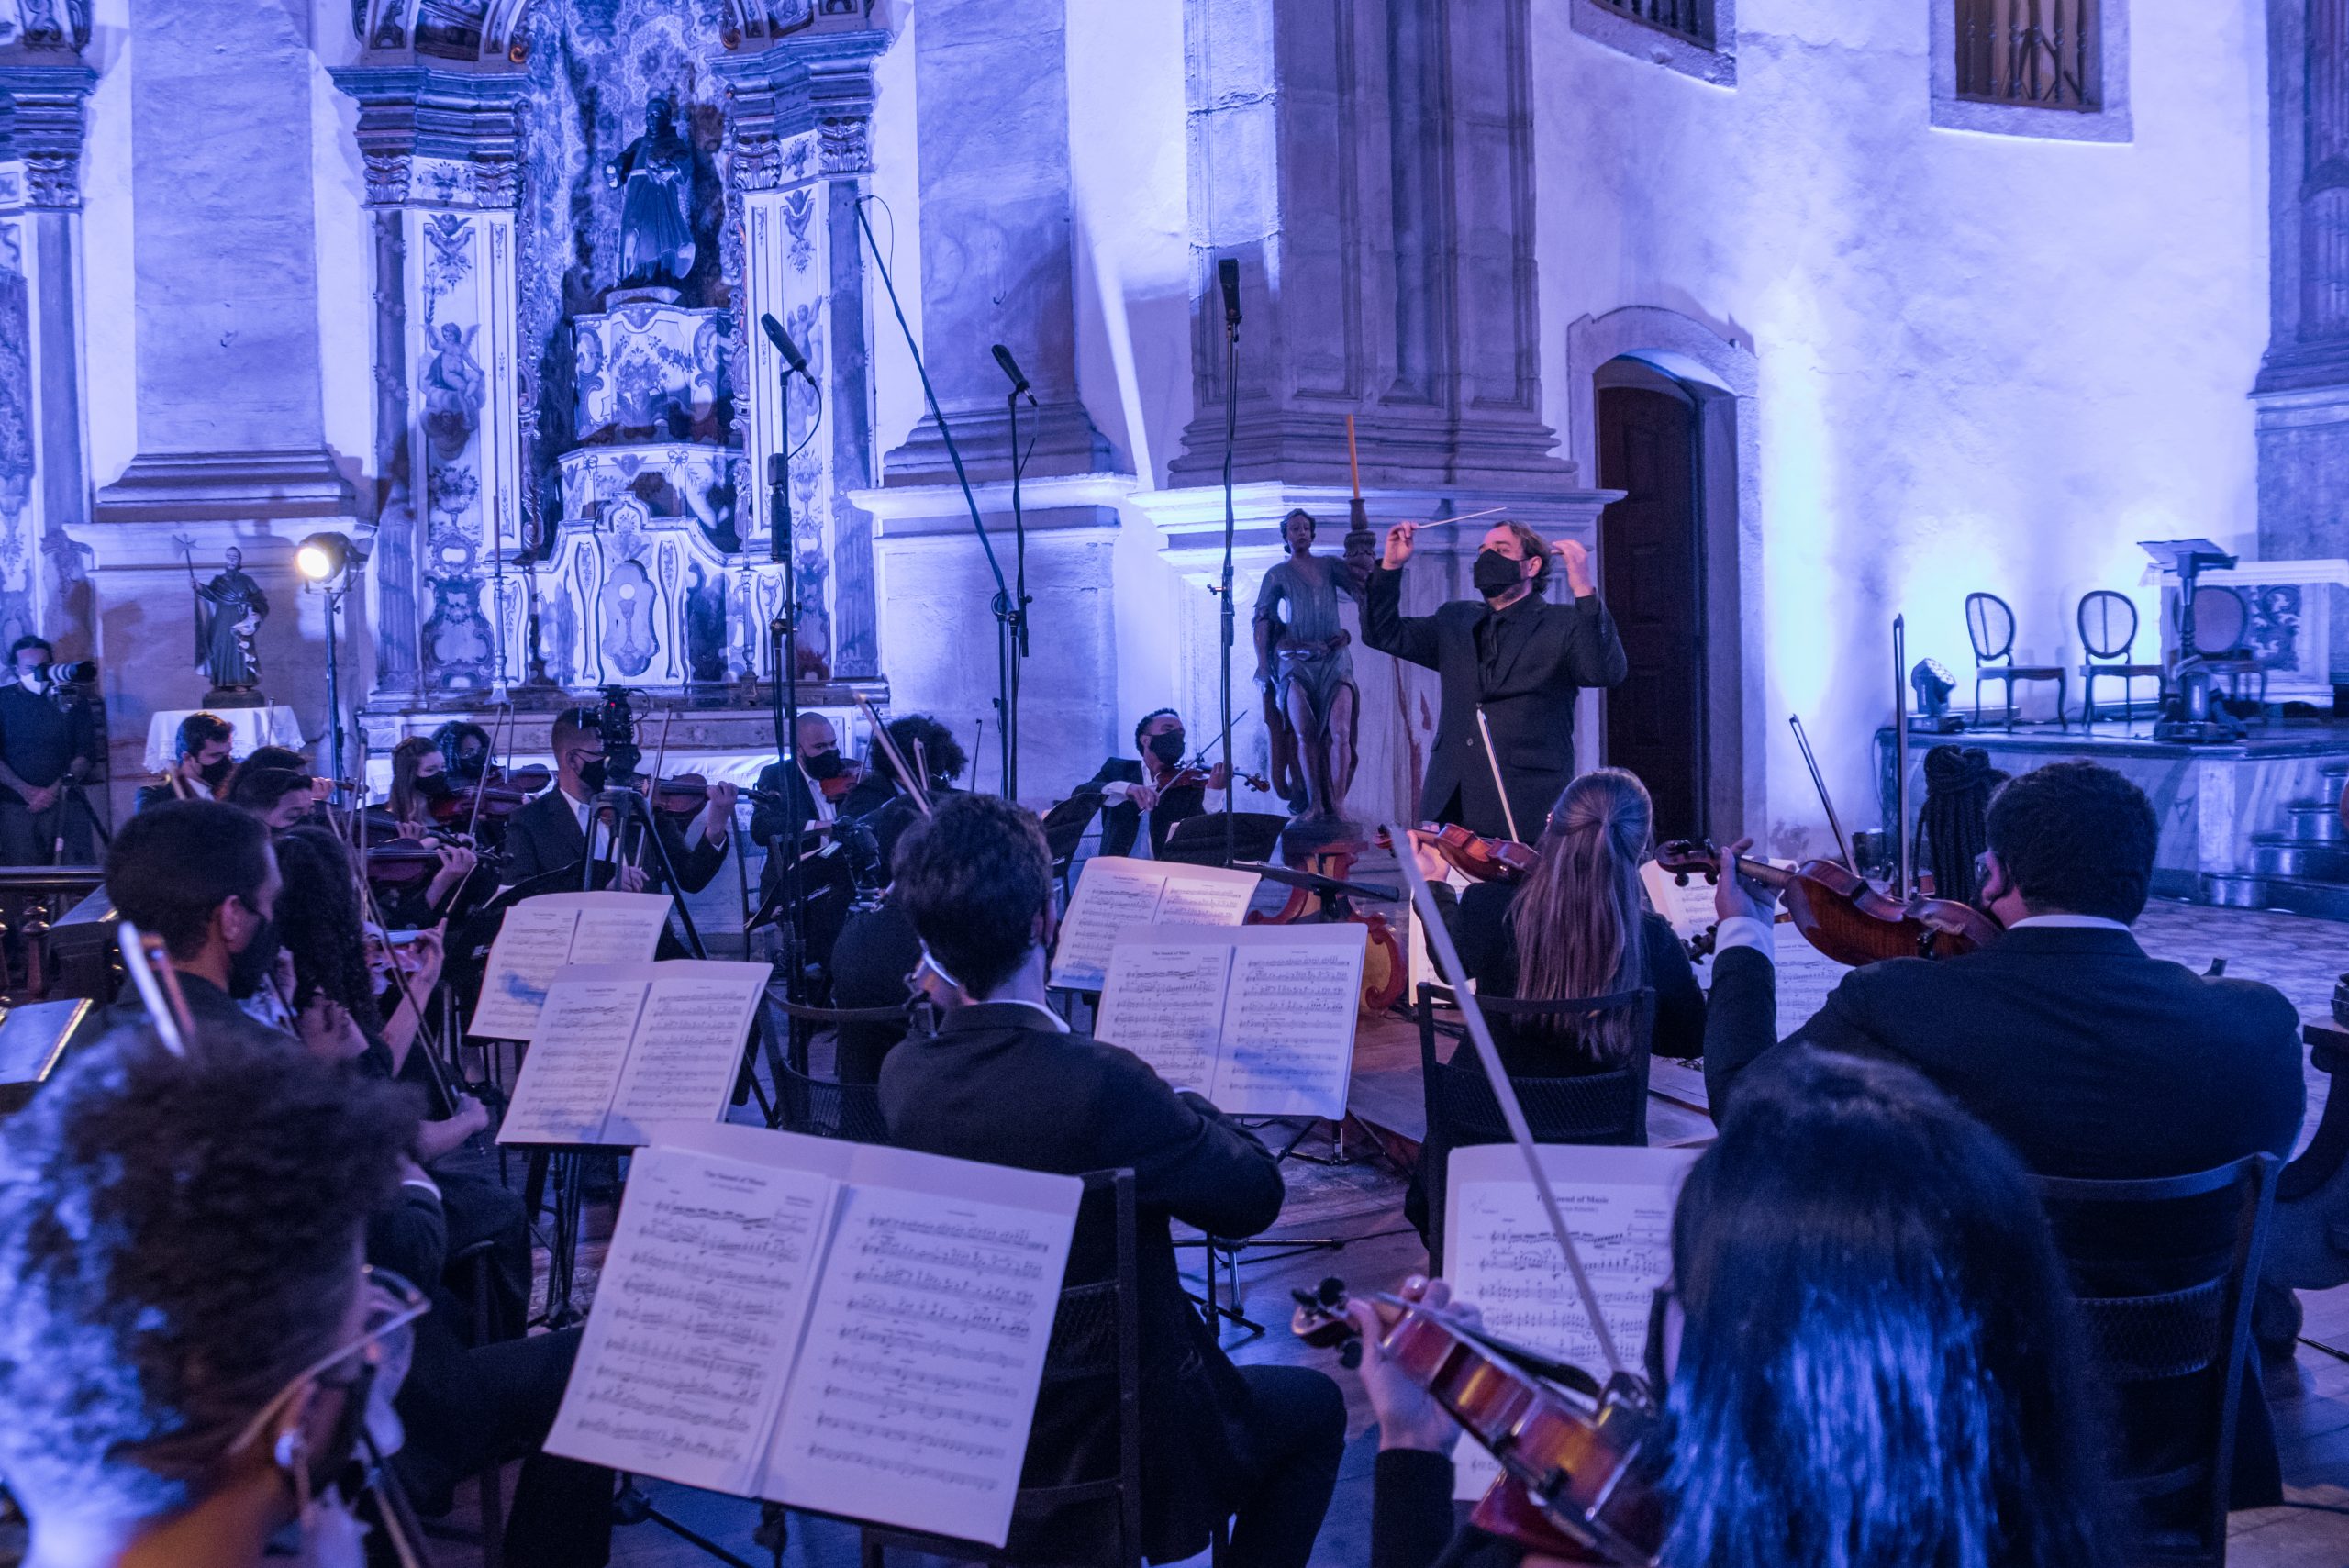 Academia Orquestra Ouro Preto recebe inscrições para bolsistas nas áreas de violino, percussão e maestro assistente